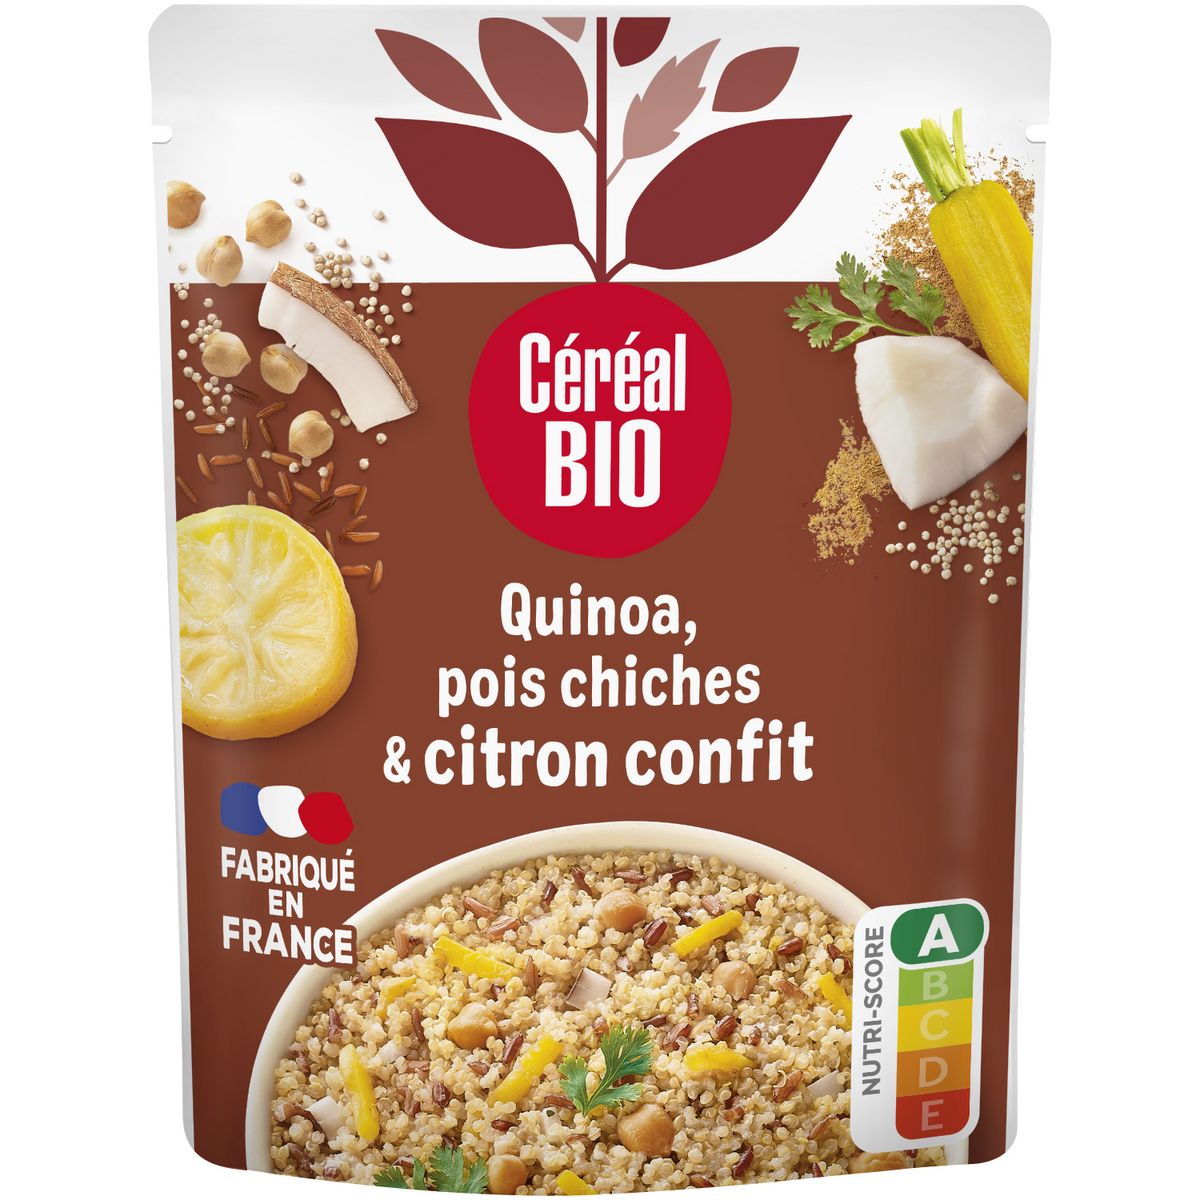 CÉRÉAL BIO Quinoa royal pois chiches et citron confit sachet express 1 personne 220g